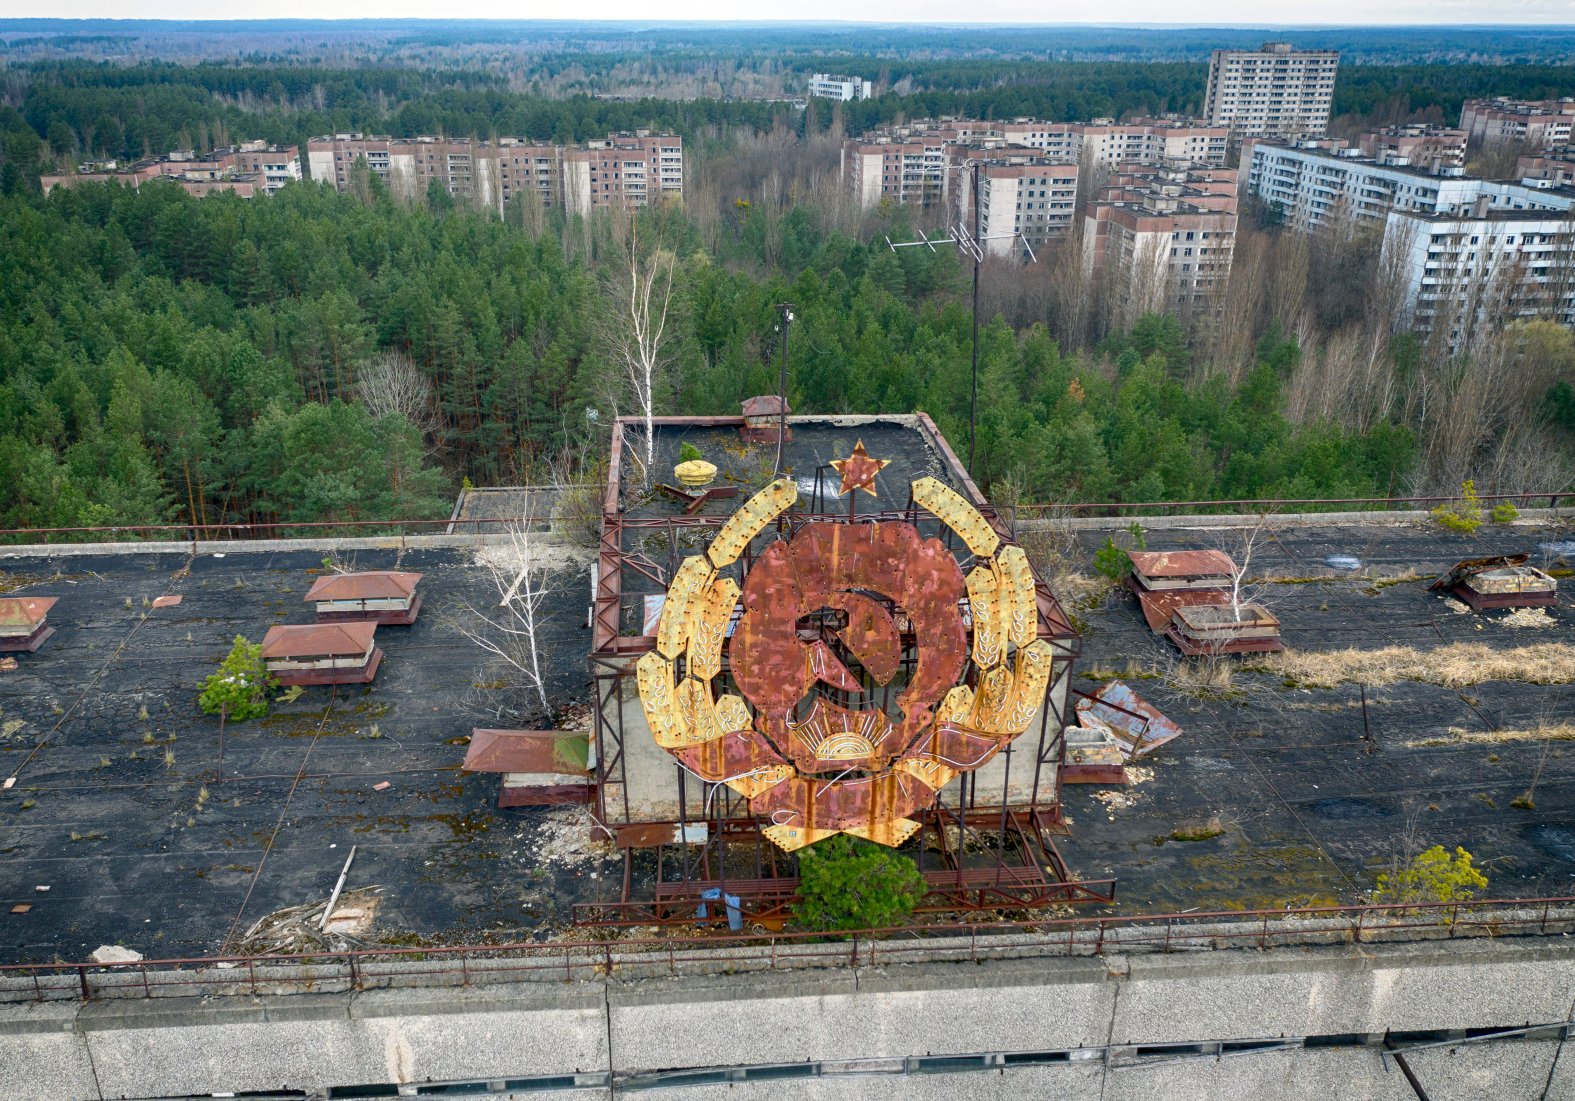 Http chernobyl. Припять ЧАЭС 2021. Авария на Чернобыльской АЭС. 26 Апреля 1986 года, Припять. Чернобыль сейчас 1986. Что такое ЧАЭС это Чернобыльская атомная электростанция.